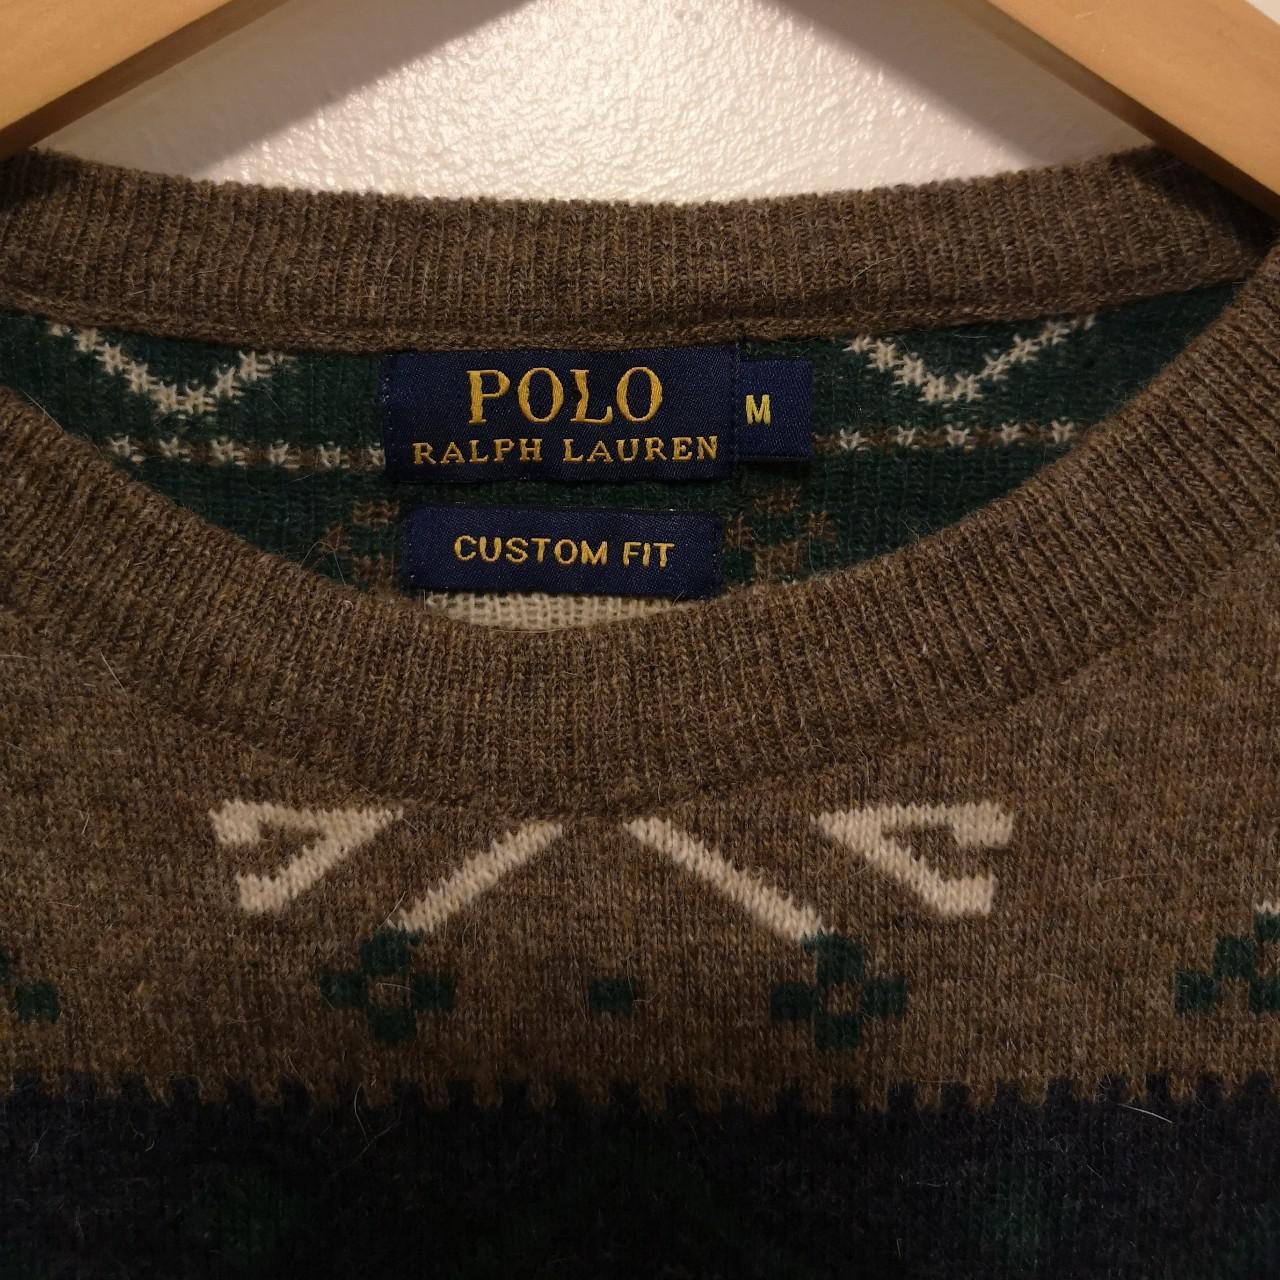 Polo Ralph Lauren Wool Sweater Fair Isle Pattern - Depop